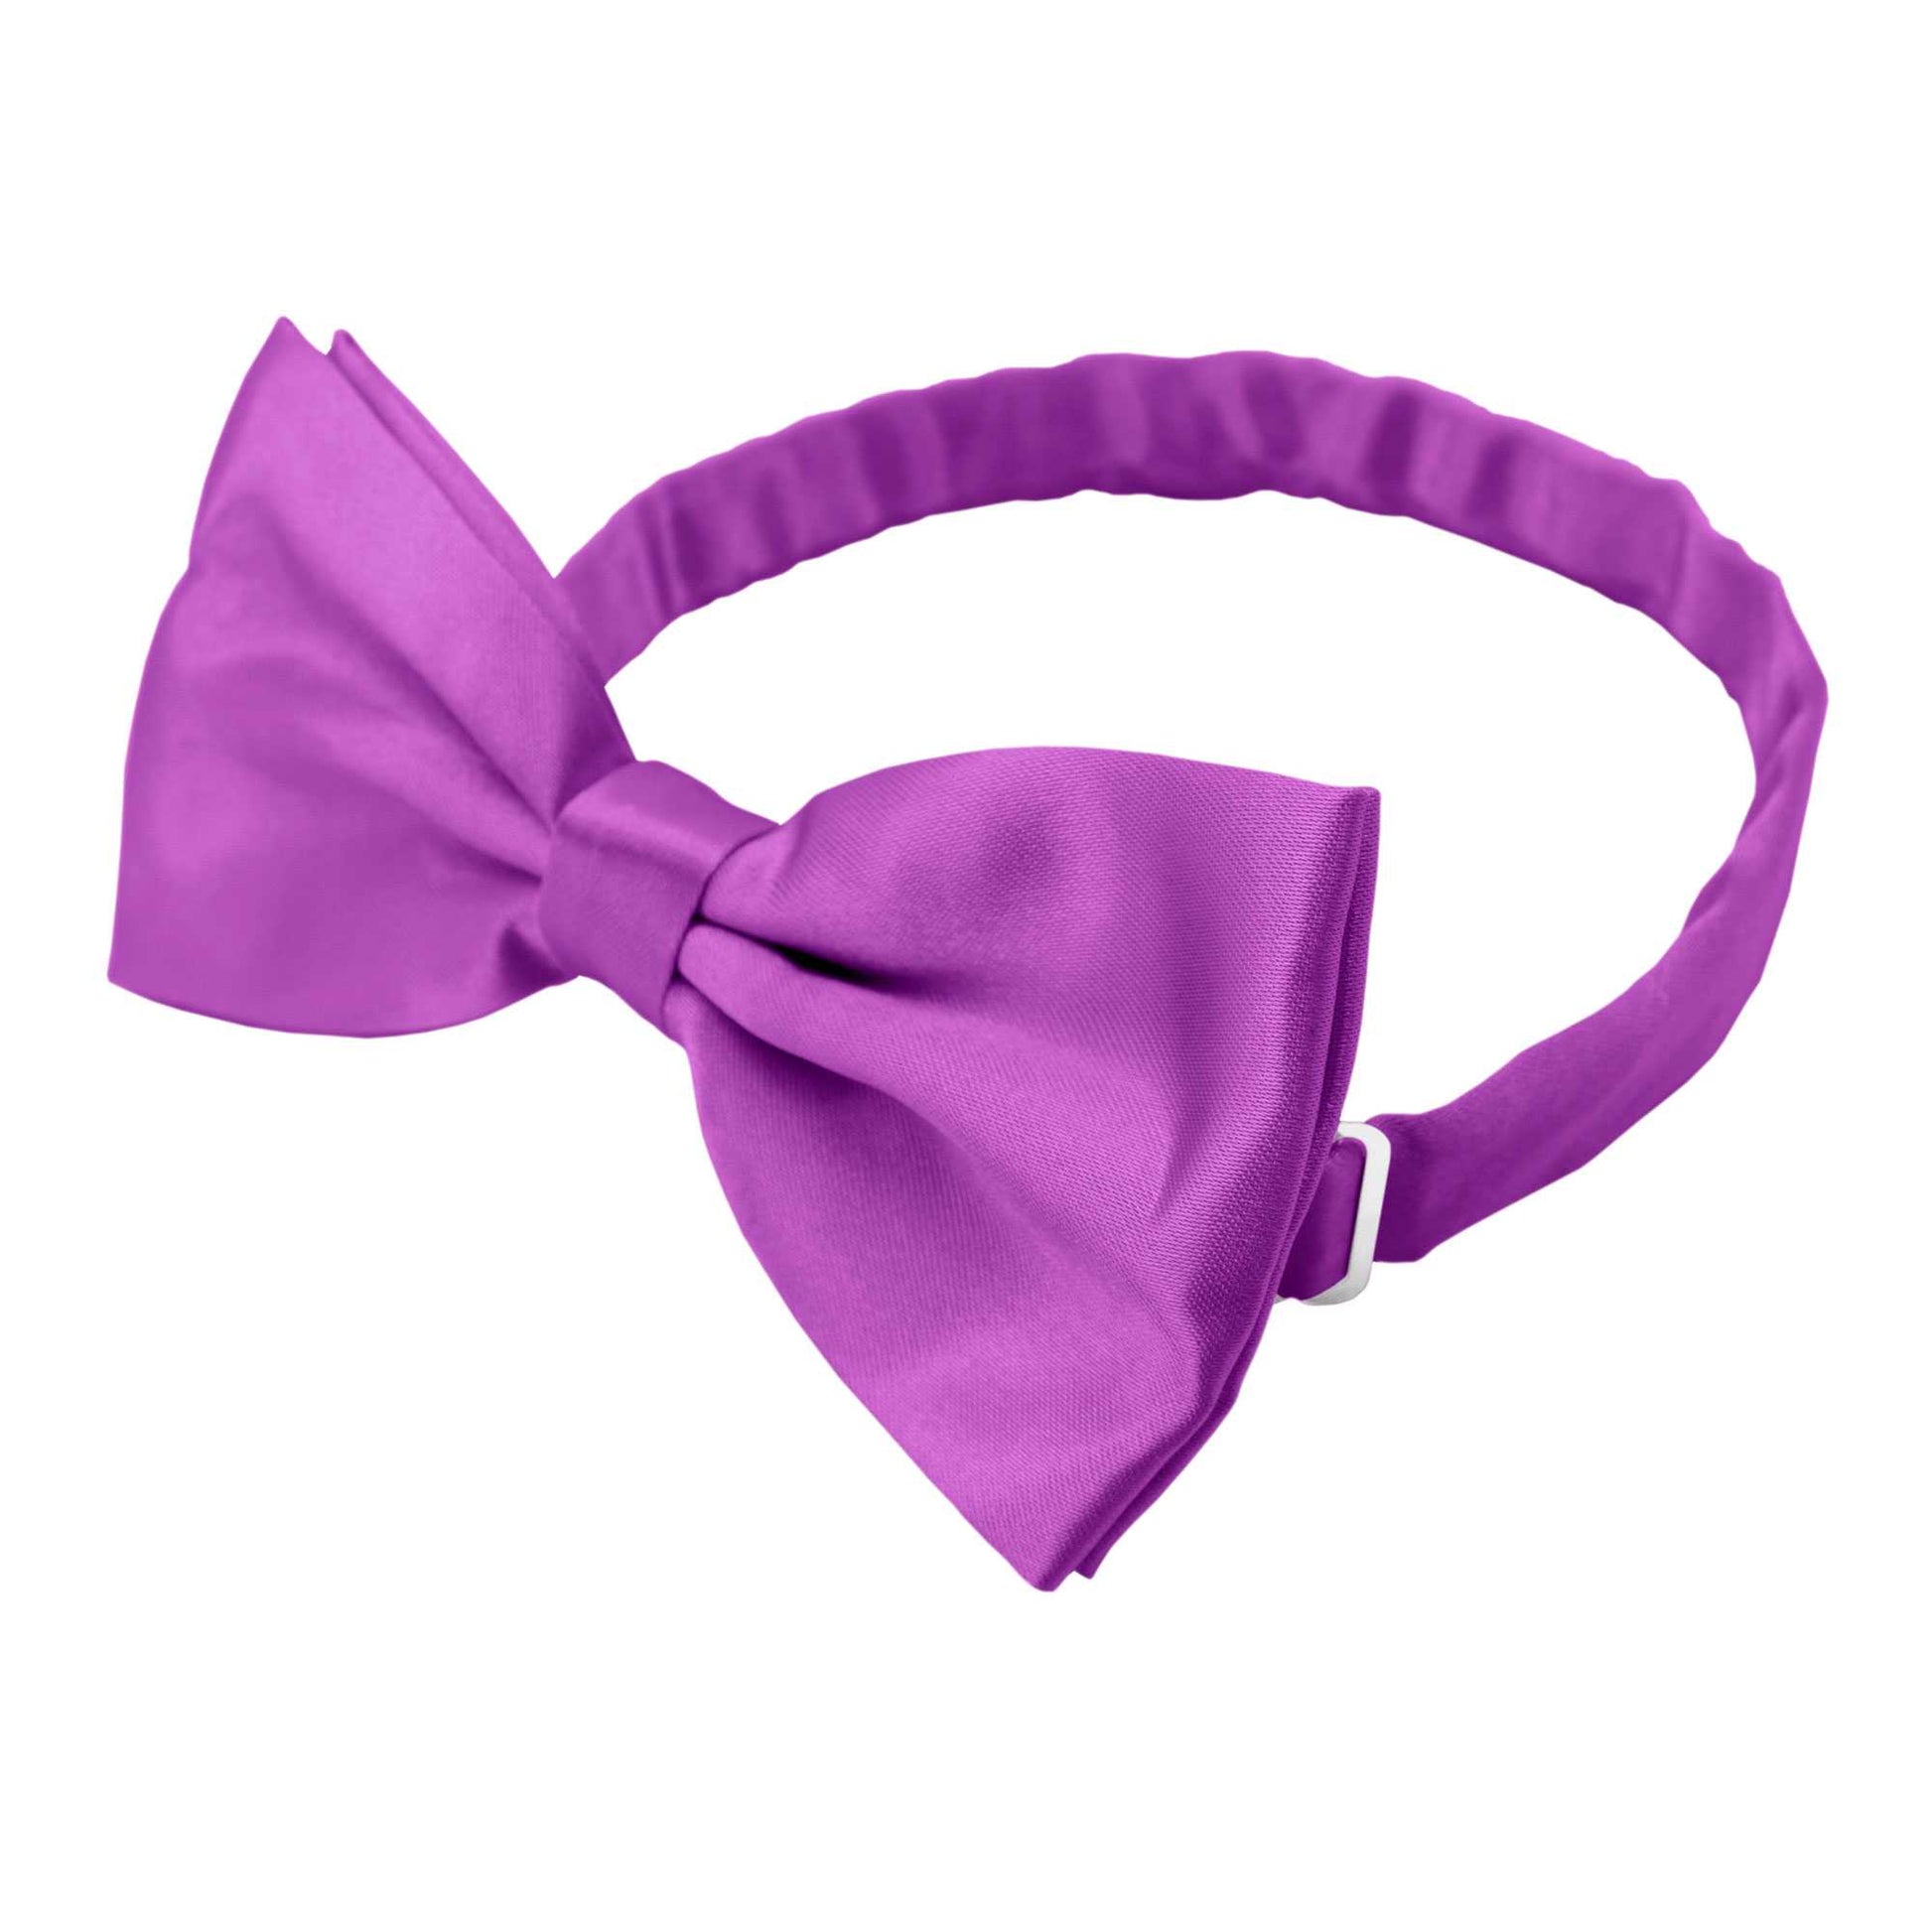 Pajarita Elegante para Hombre de color Purpura Diseño Unicolor con Cierre de Gancho Clip Ajustable, 12cm x 6cm, Celebraciones, Fiestas, Trabajo, Bodas y Eventos